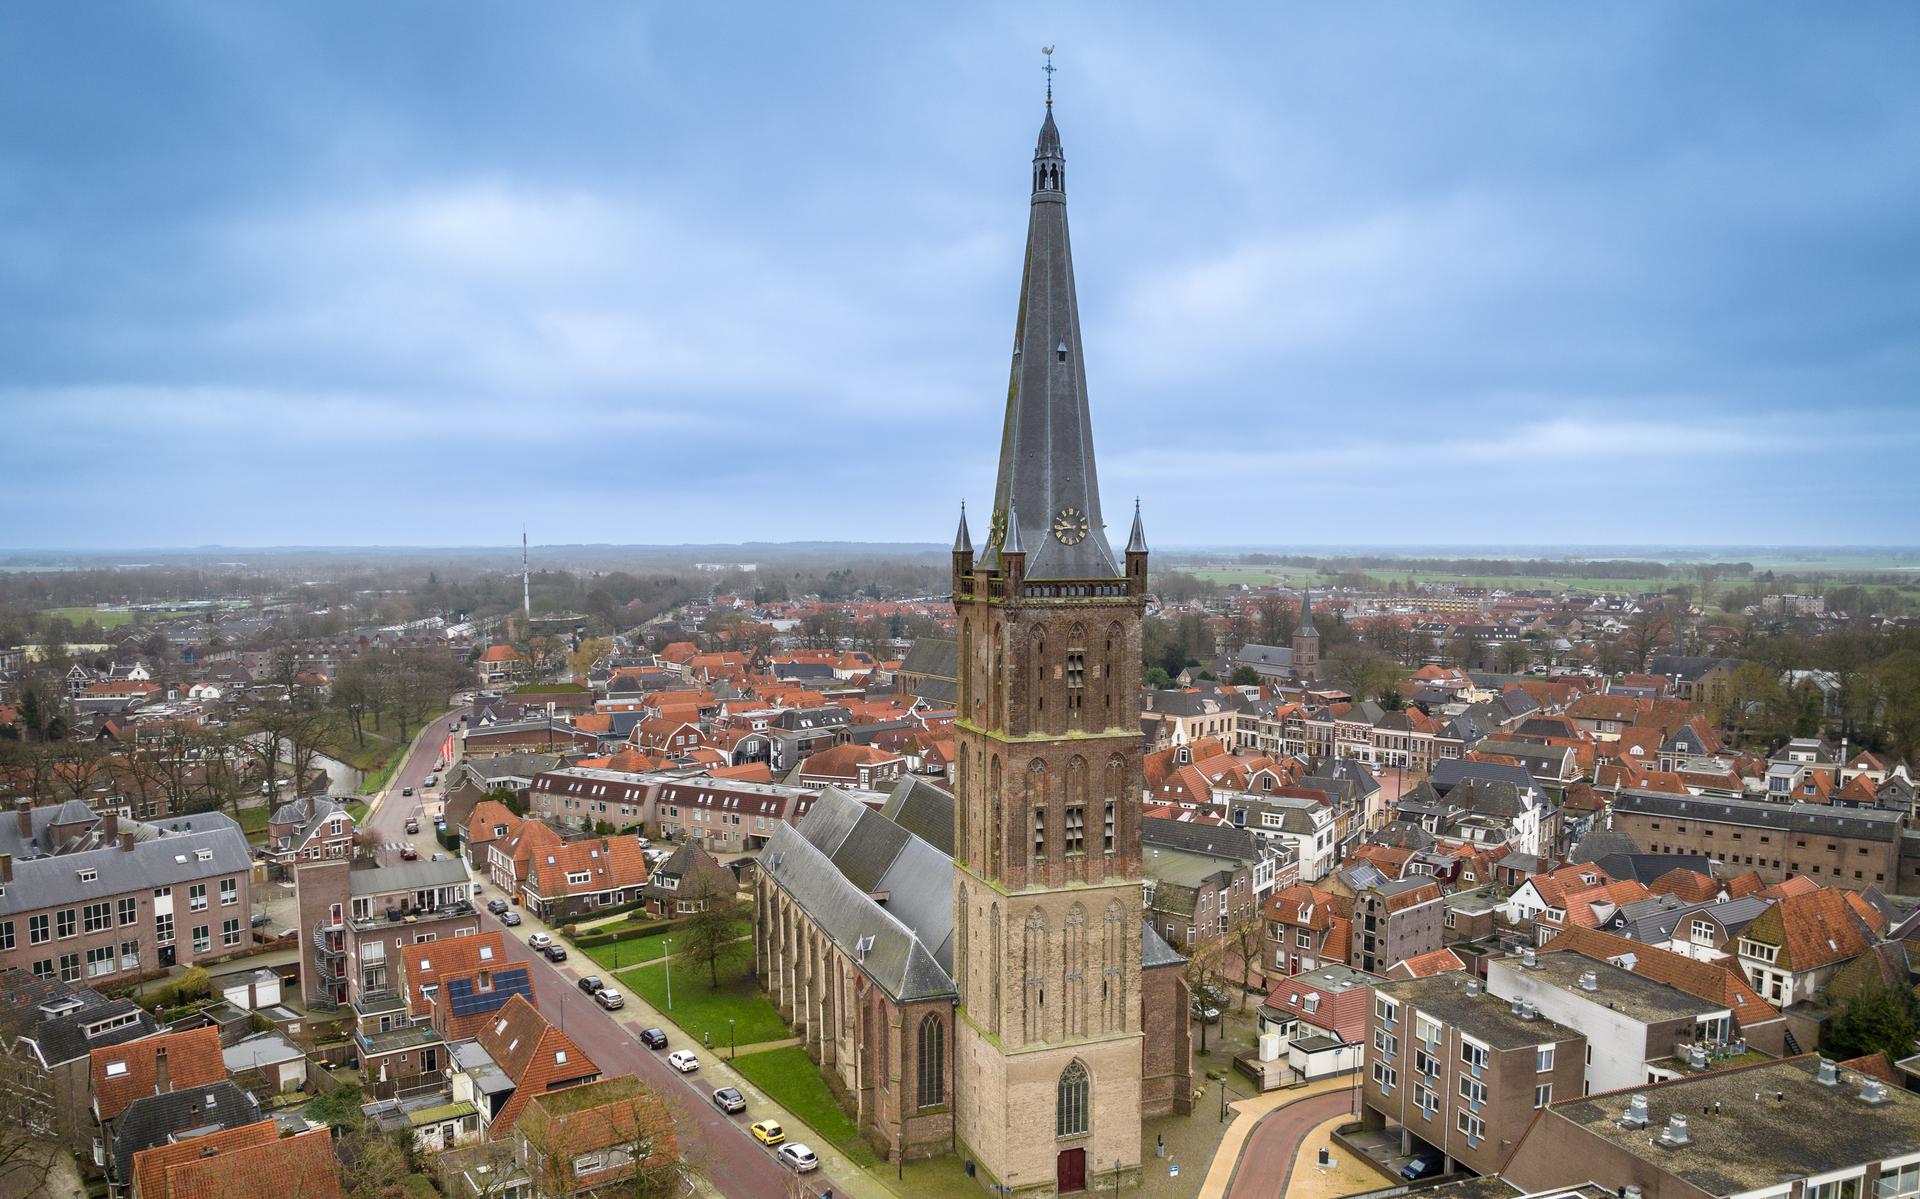 De masterclass wordt zondagmiddag gehouden in de Grote Kerk in Steenwijk. 